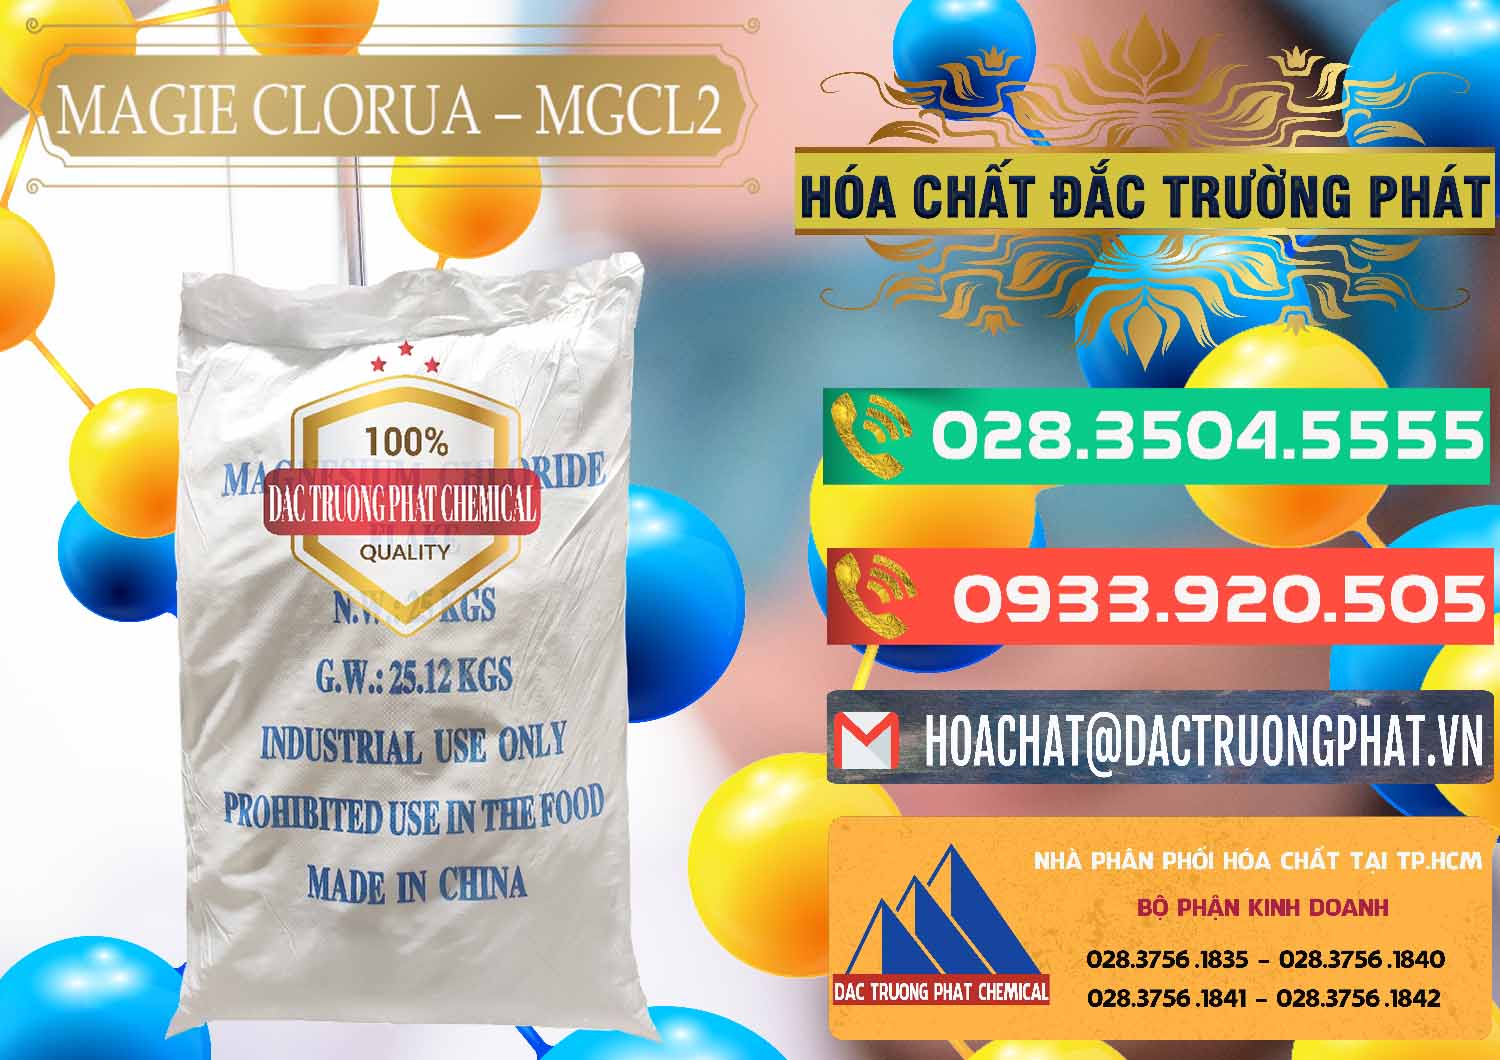 Nơi chuyên cung cấp & bán Magie Clorua – MGCL2 96% Dạng Vảy Trung Quốc China - 0091 - Phân phối ( kinh doanh ) hóa chất tại TP.HCM - congtyhoachat.com.vn